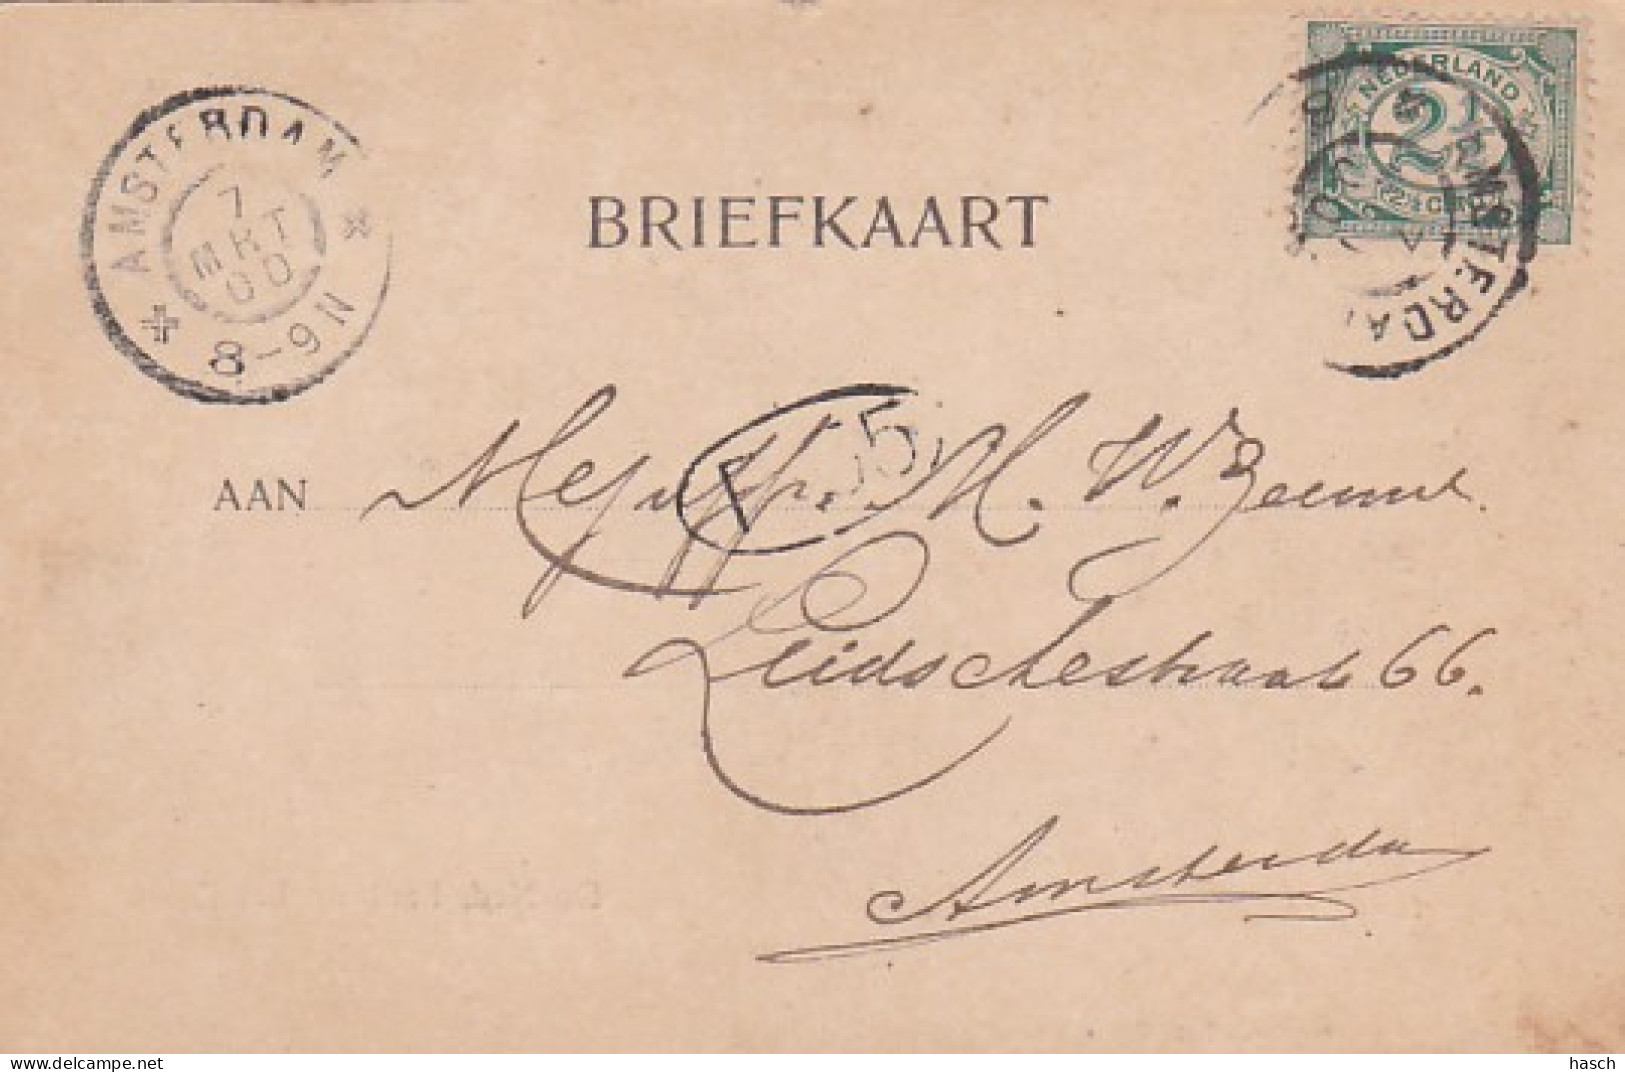 4819145Amsterdam, De Ned. Bank Op Het Rokin. (poststempel 1900) - Amsterdam